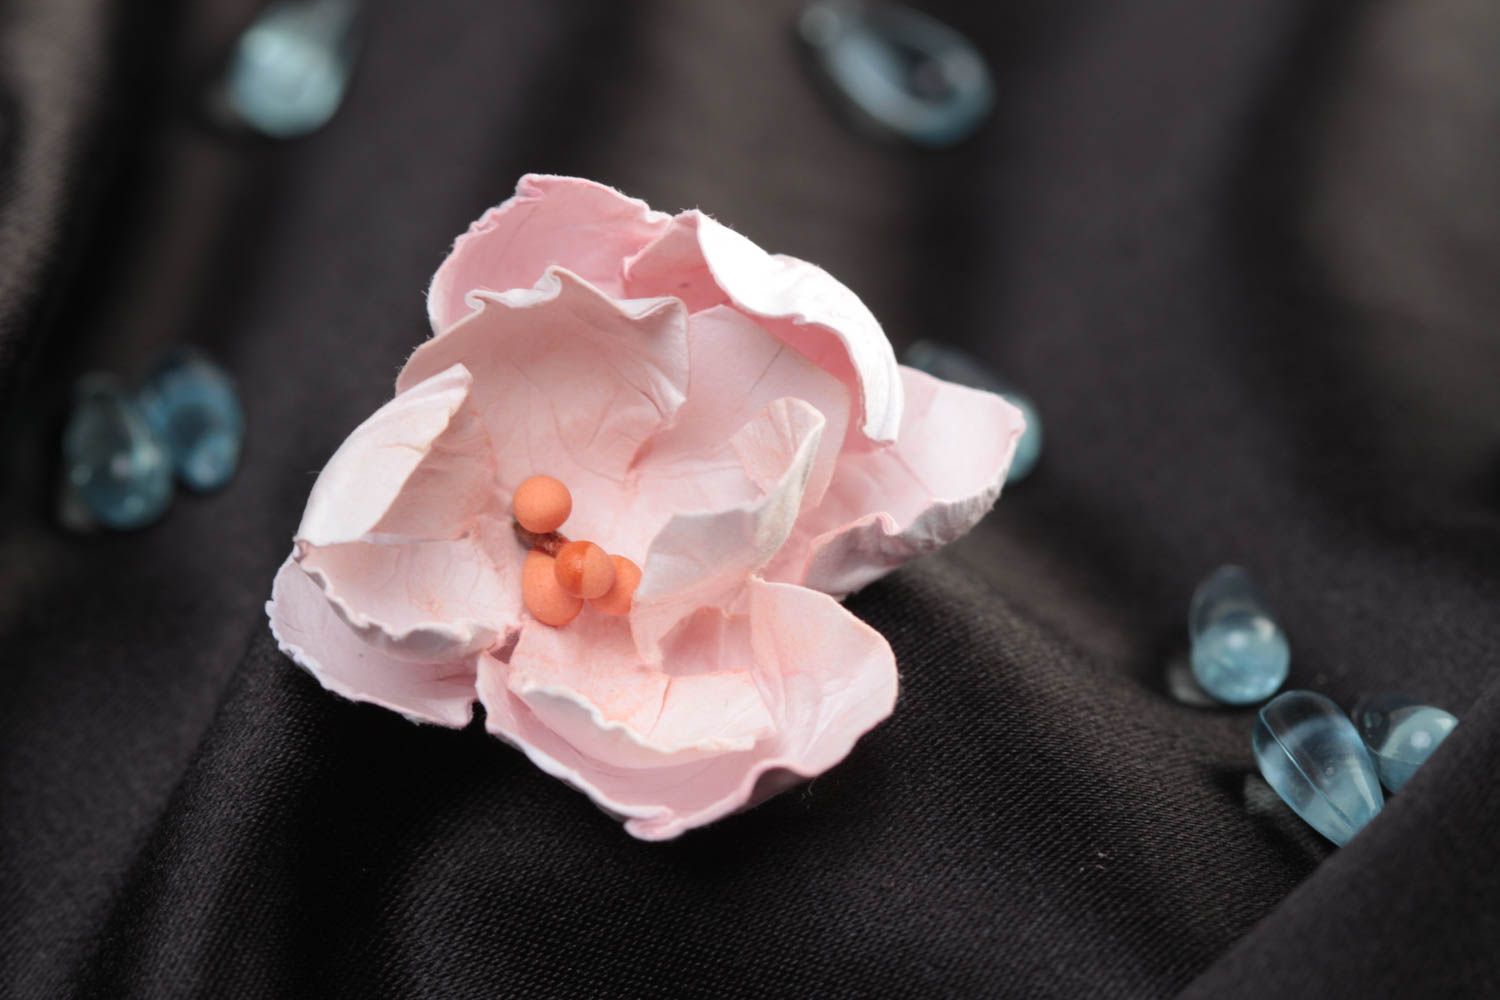 Декоративный цветок для скрапбукинга бумажный расписанный акварелью хенд мейдй фото 1